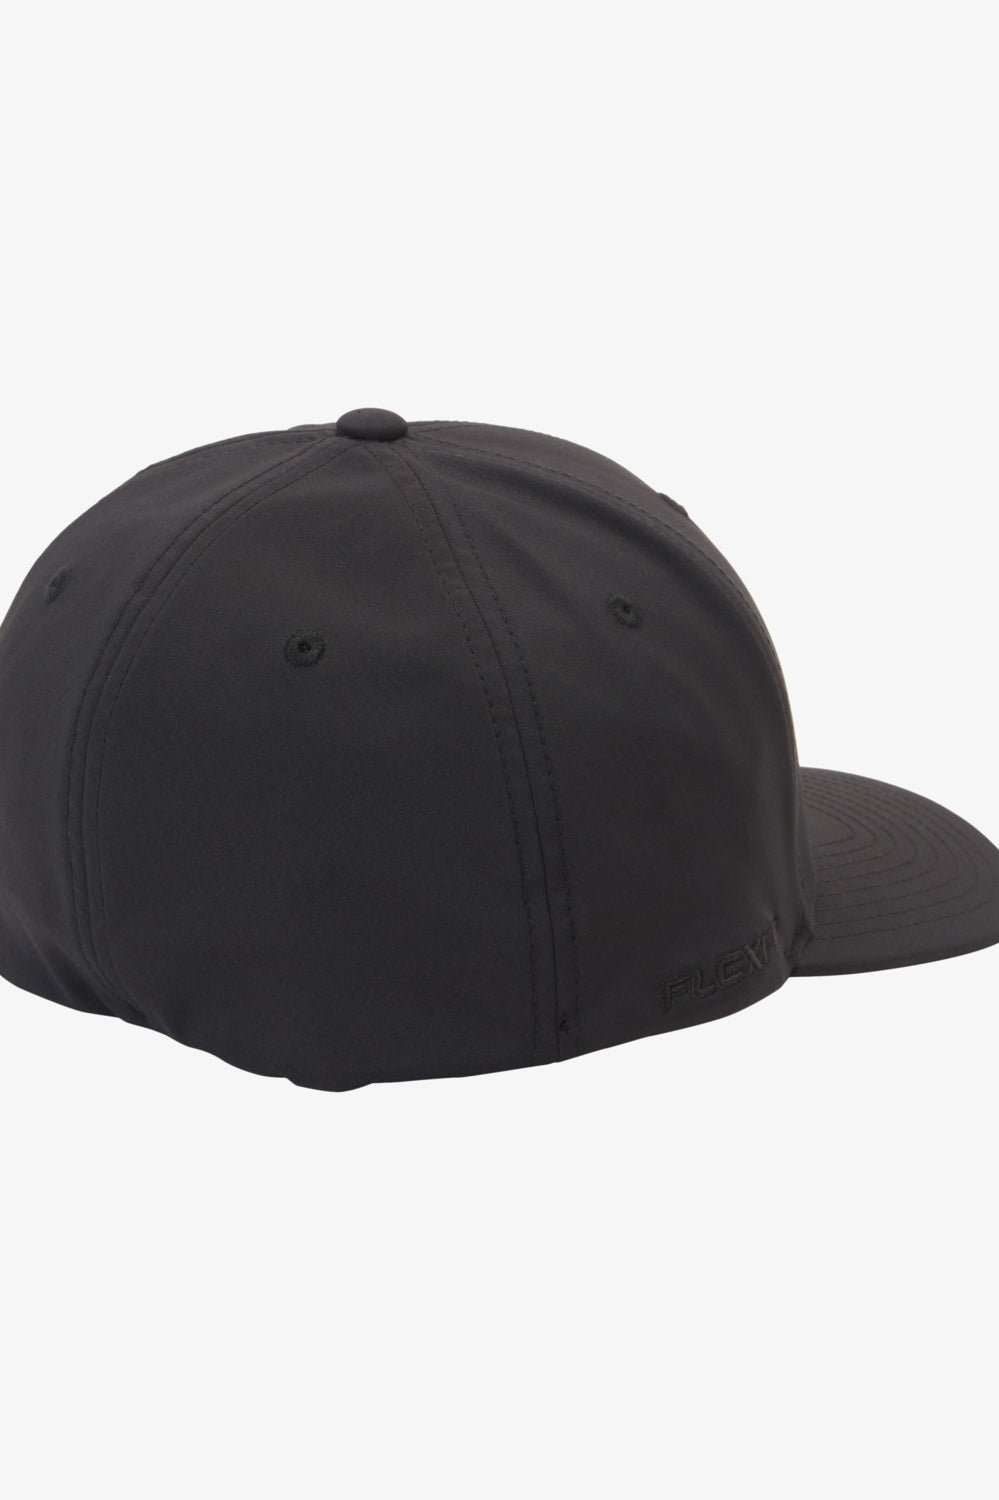 Quiksilver: Amped Up Flexfit Hat